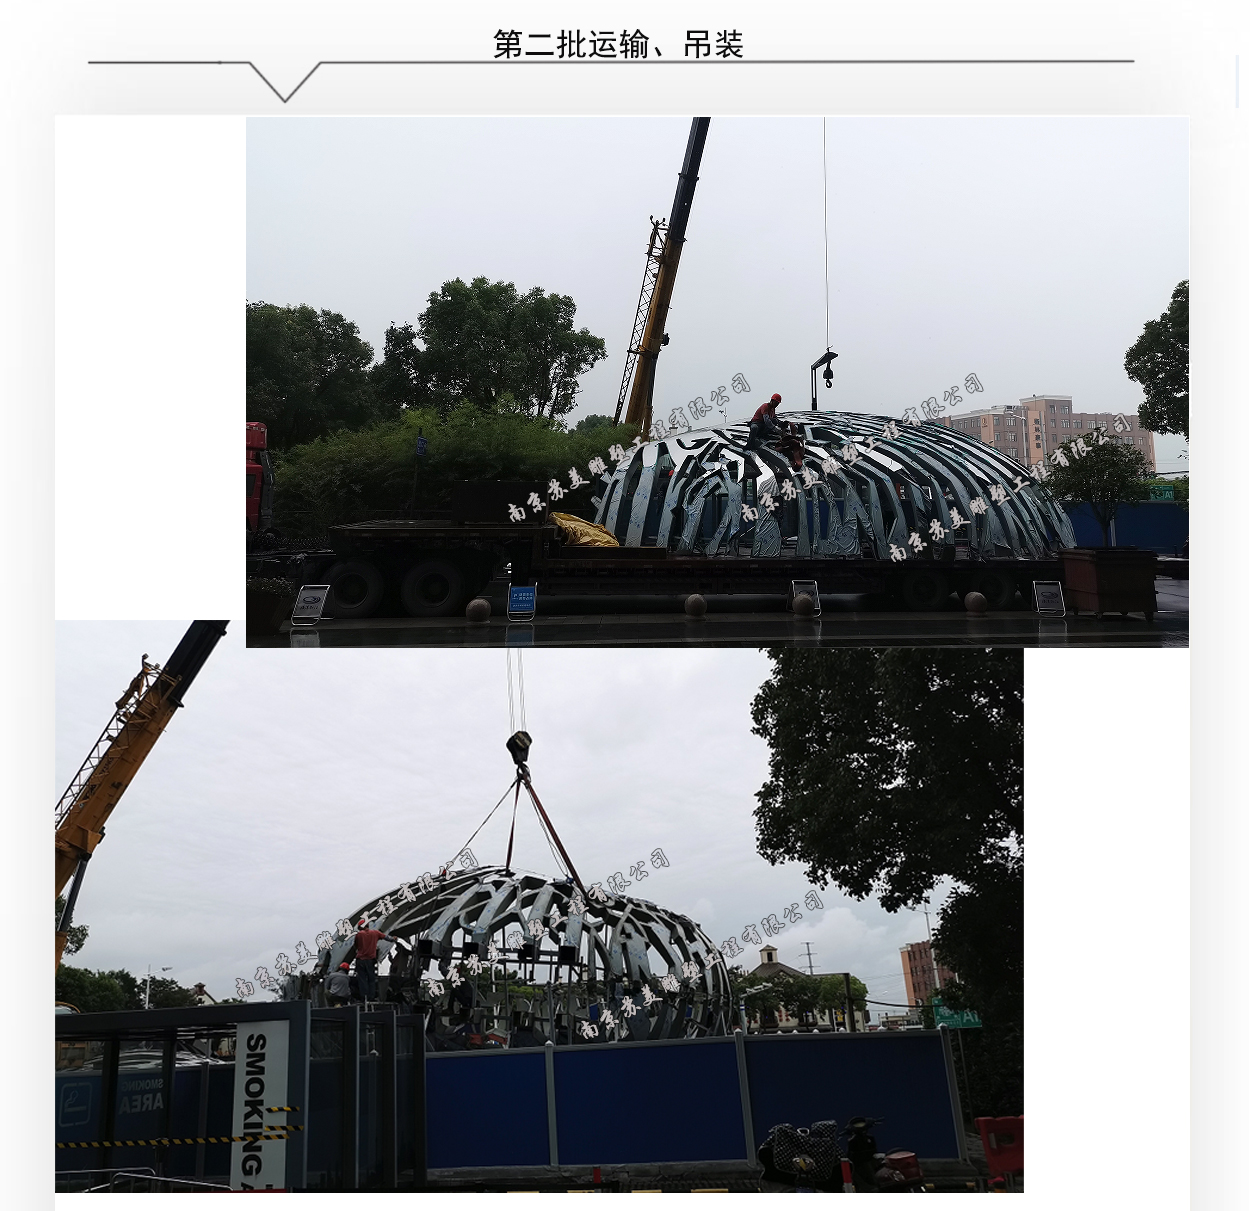 上海G60科创走廊起点景观宣传载体新纪孵源雕塑拼装过程中